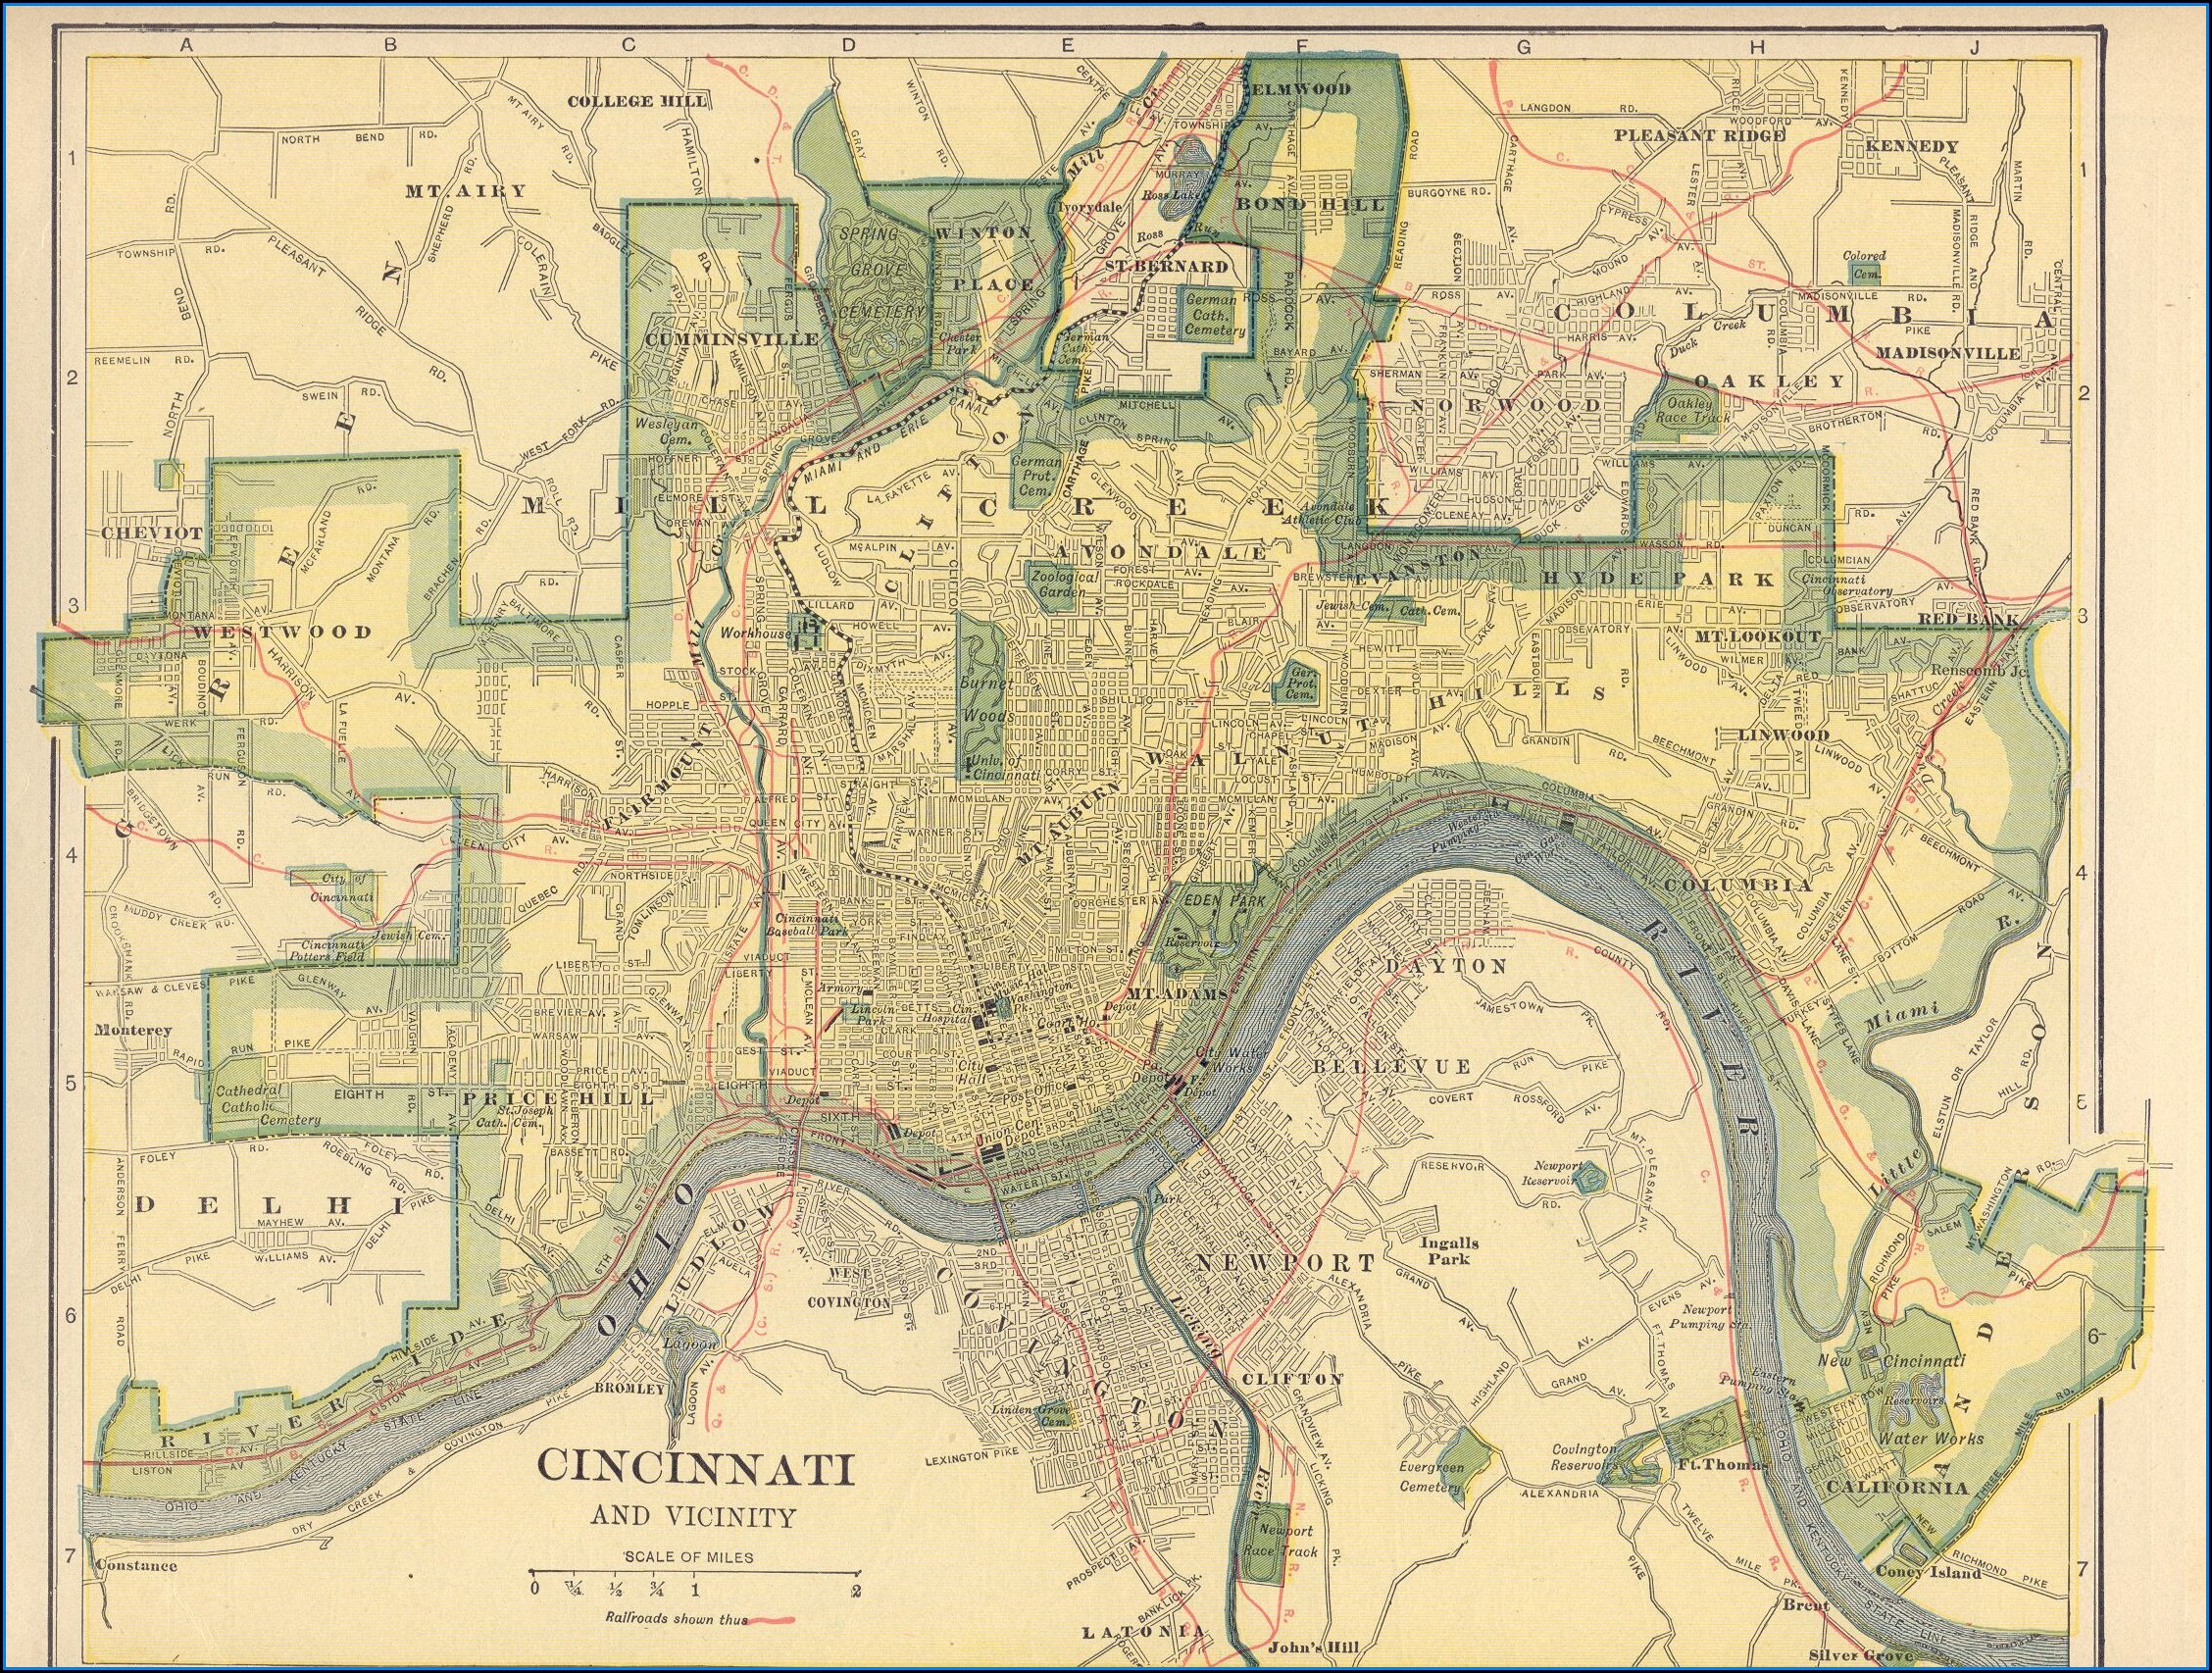 Historic Maps Of Cincinnati Ohio